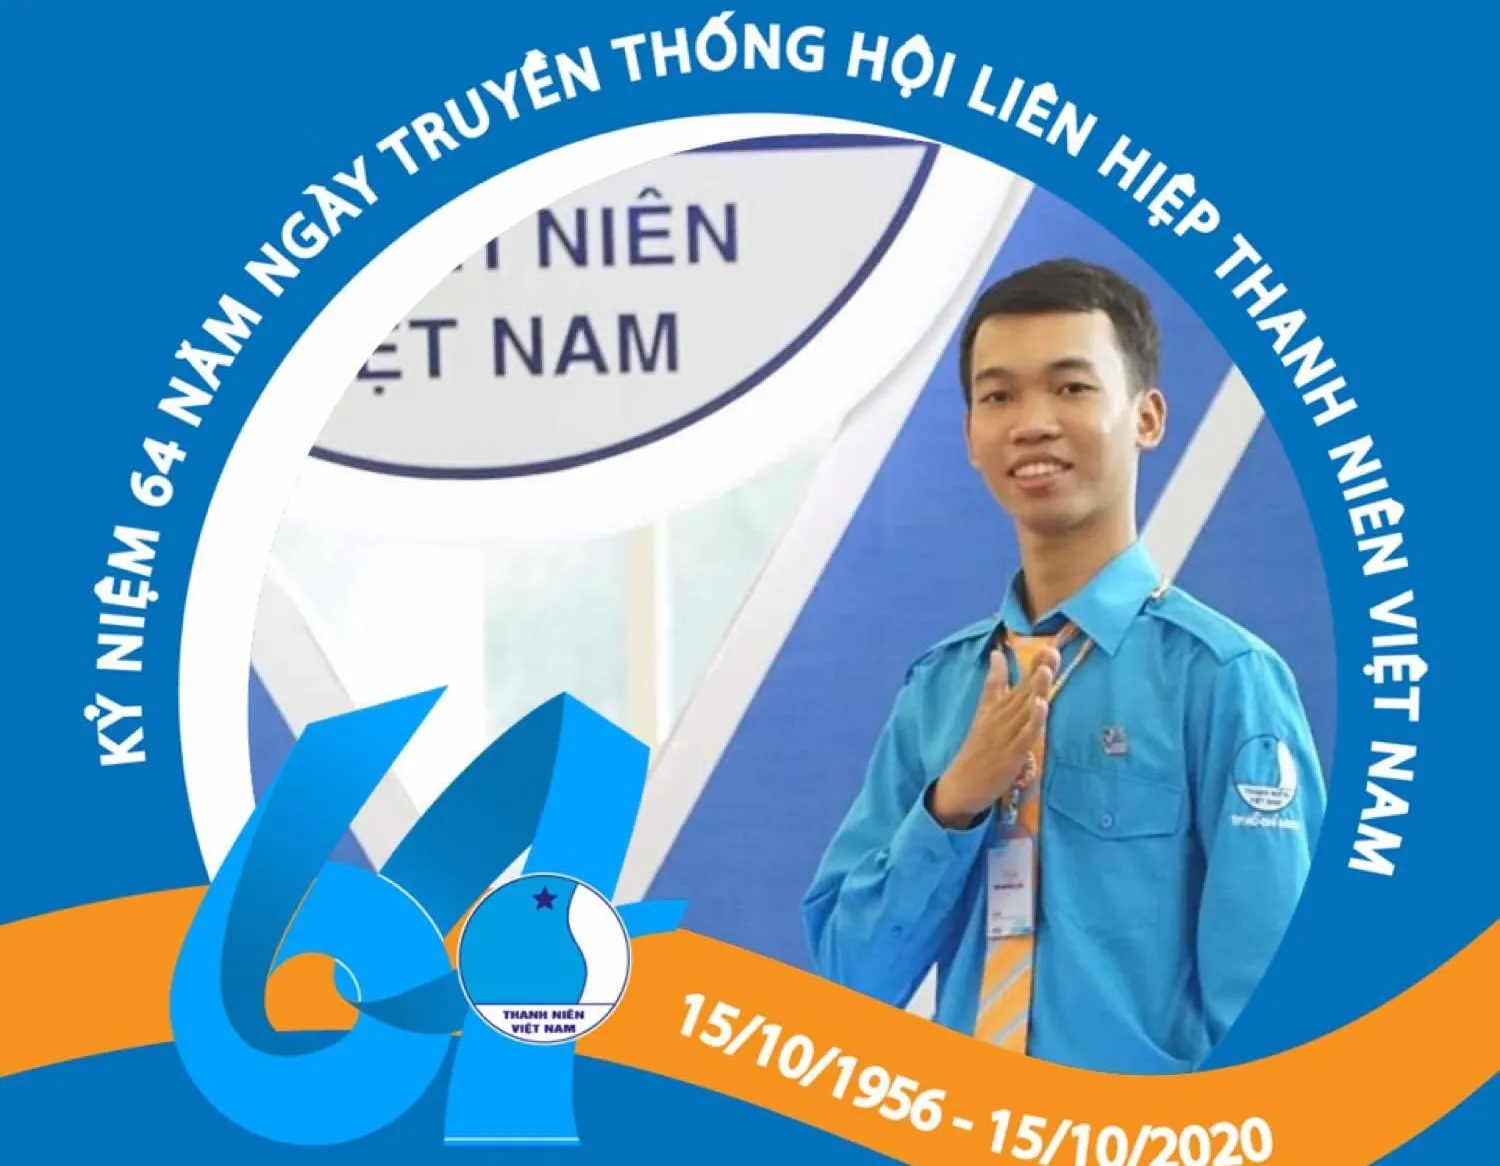 Thiều Quang Thanh Sang